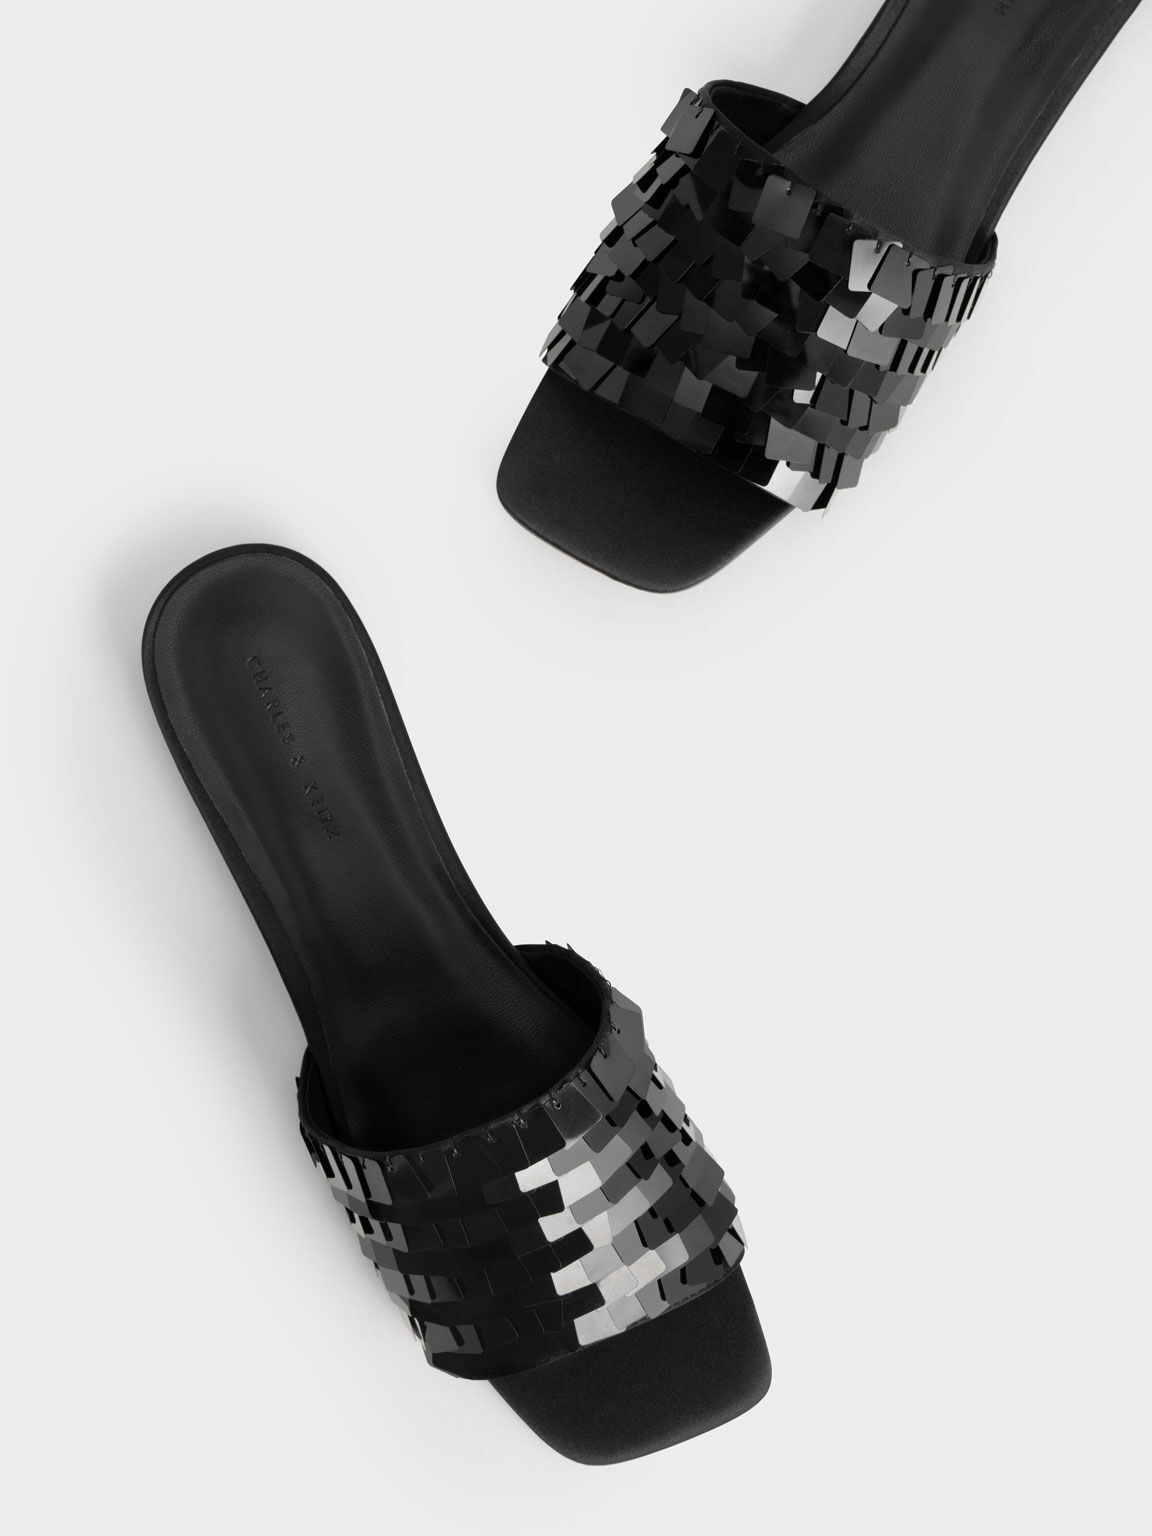 Sandal Slide Satin Sequinned, Black, hi-res